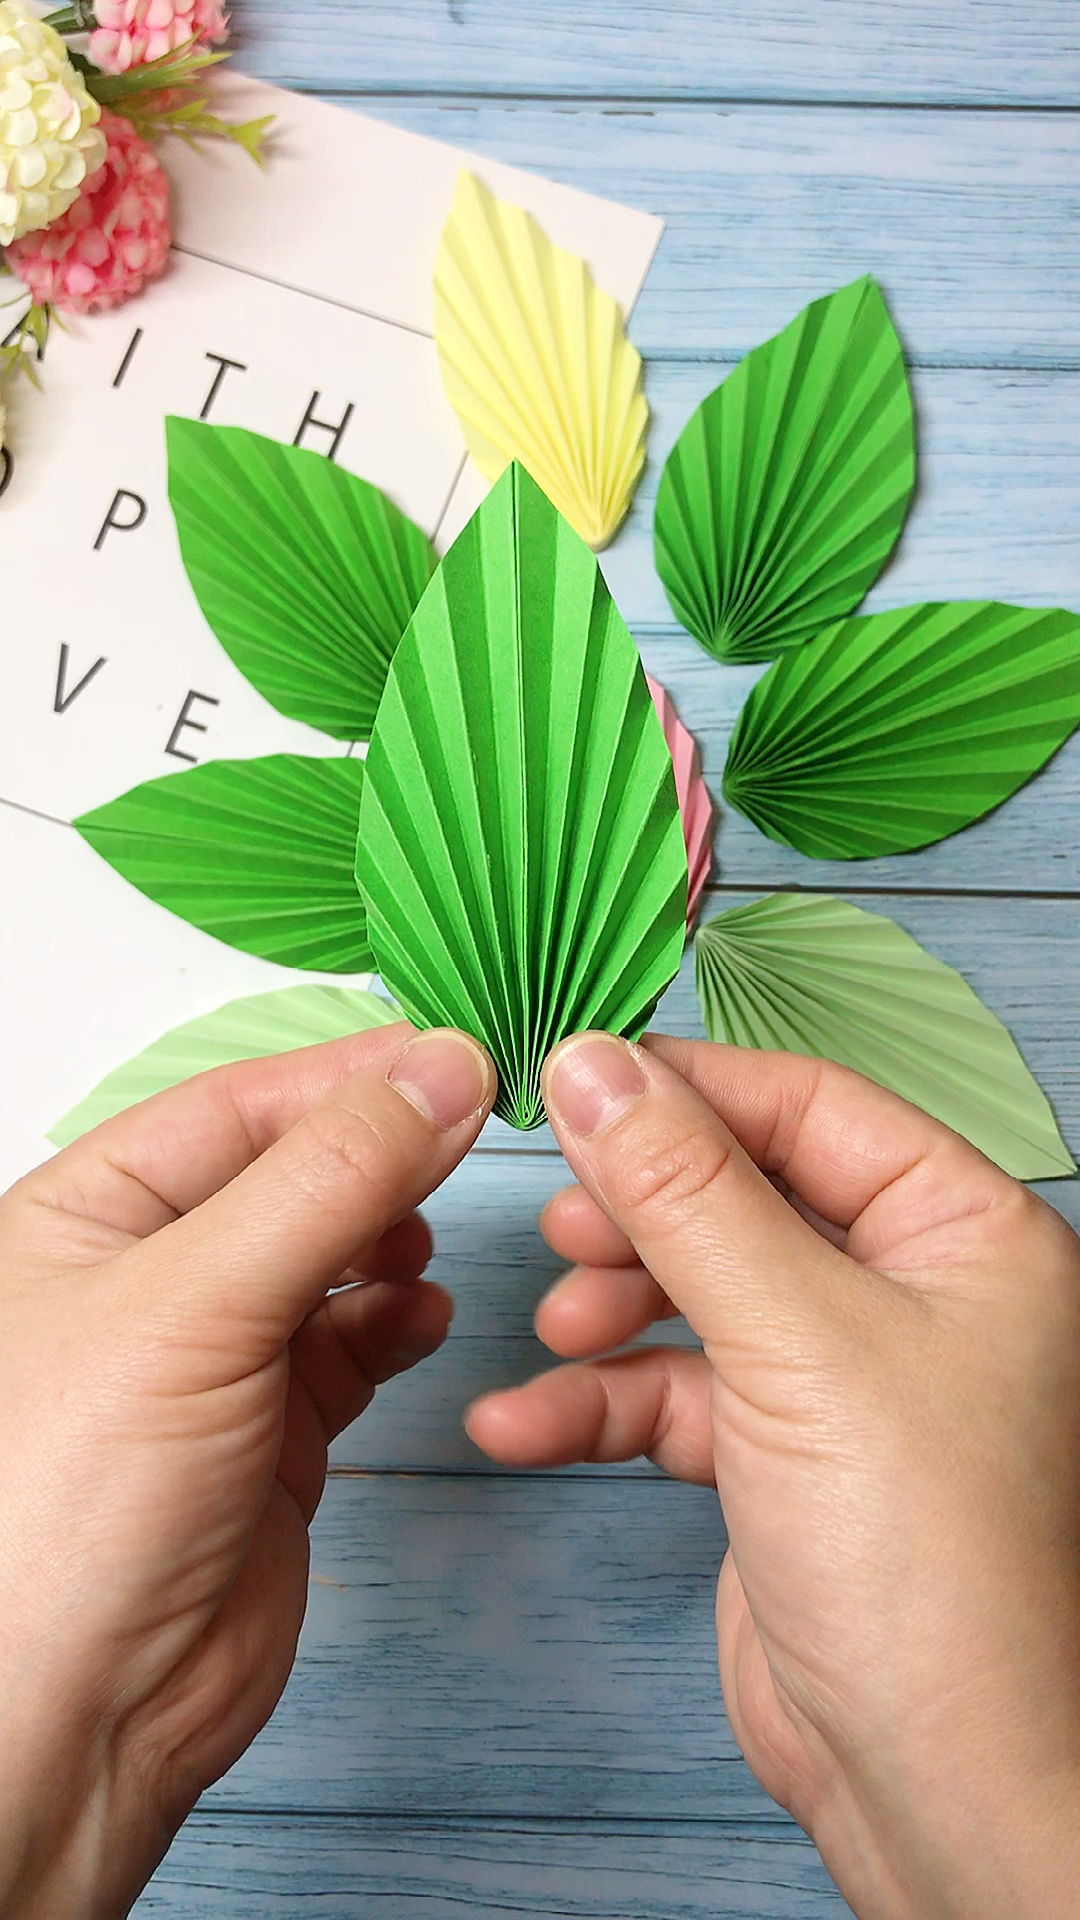 纸浮雕叶子折法图片